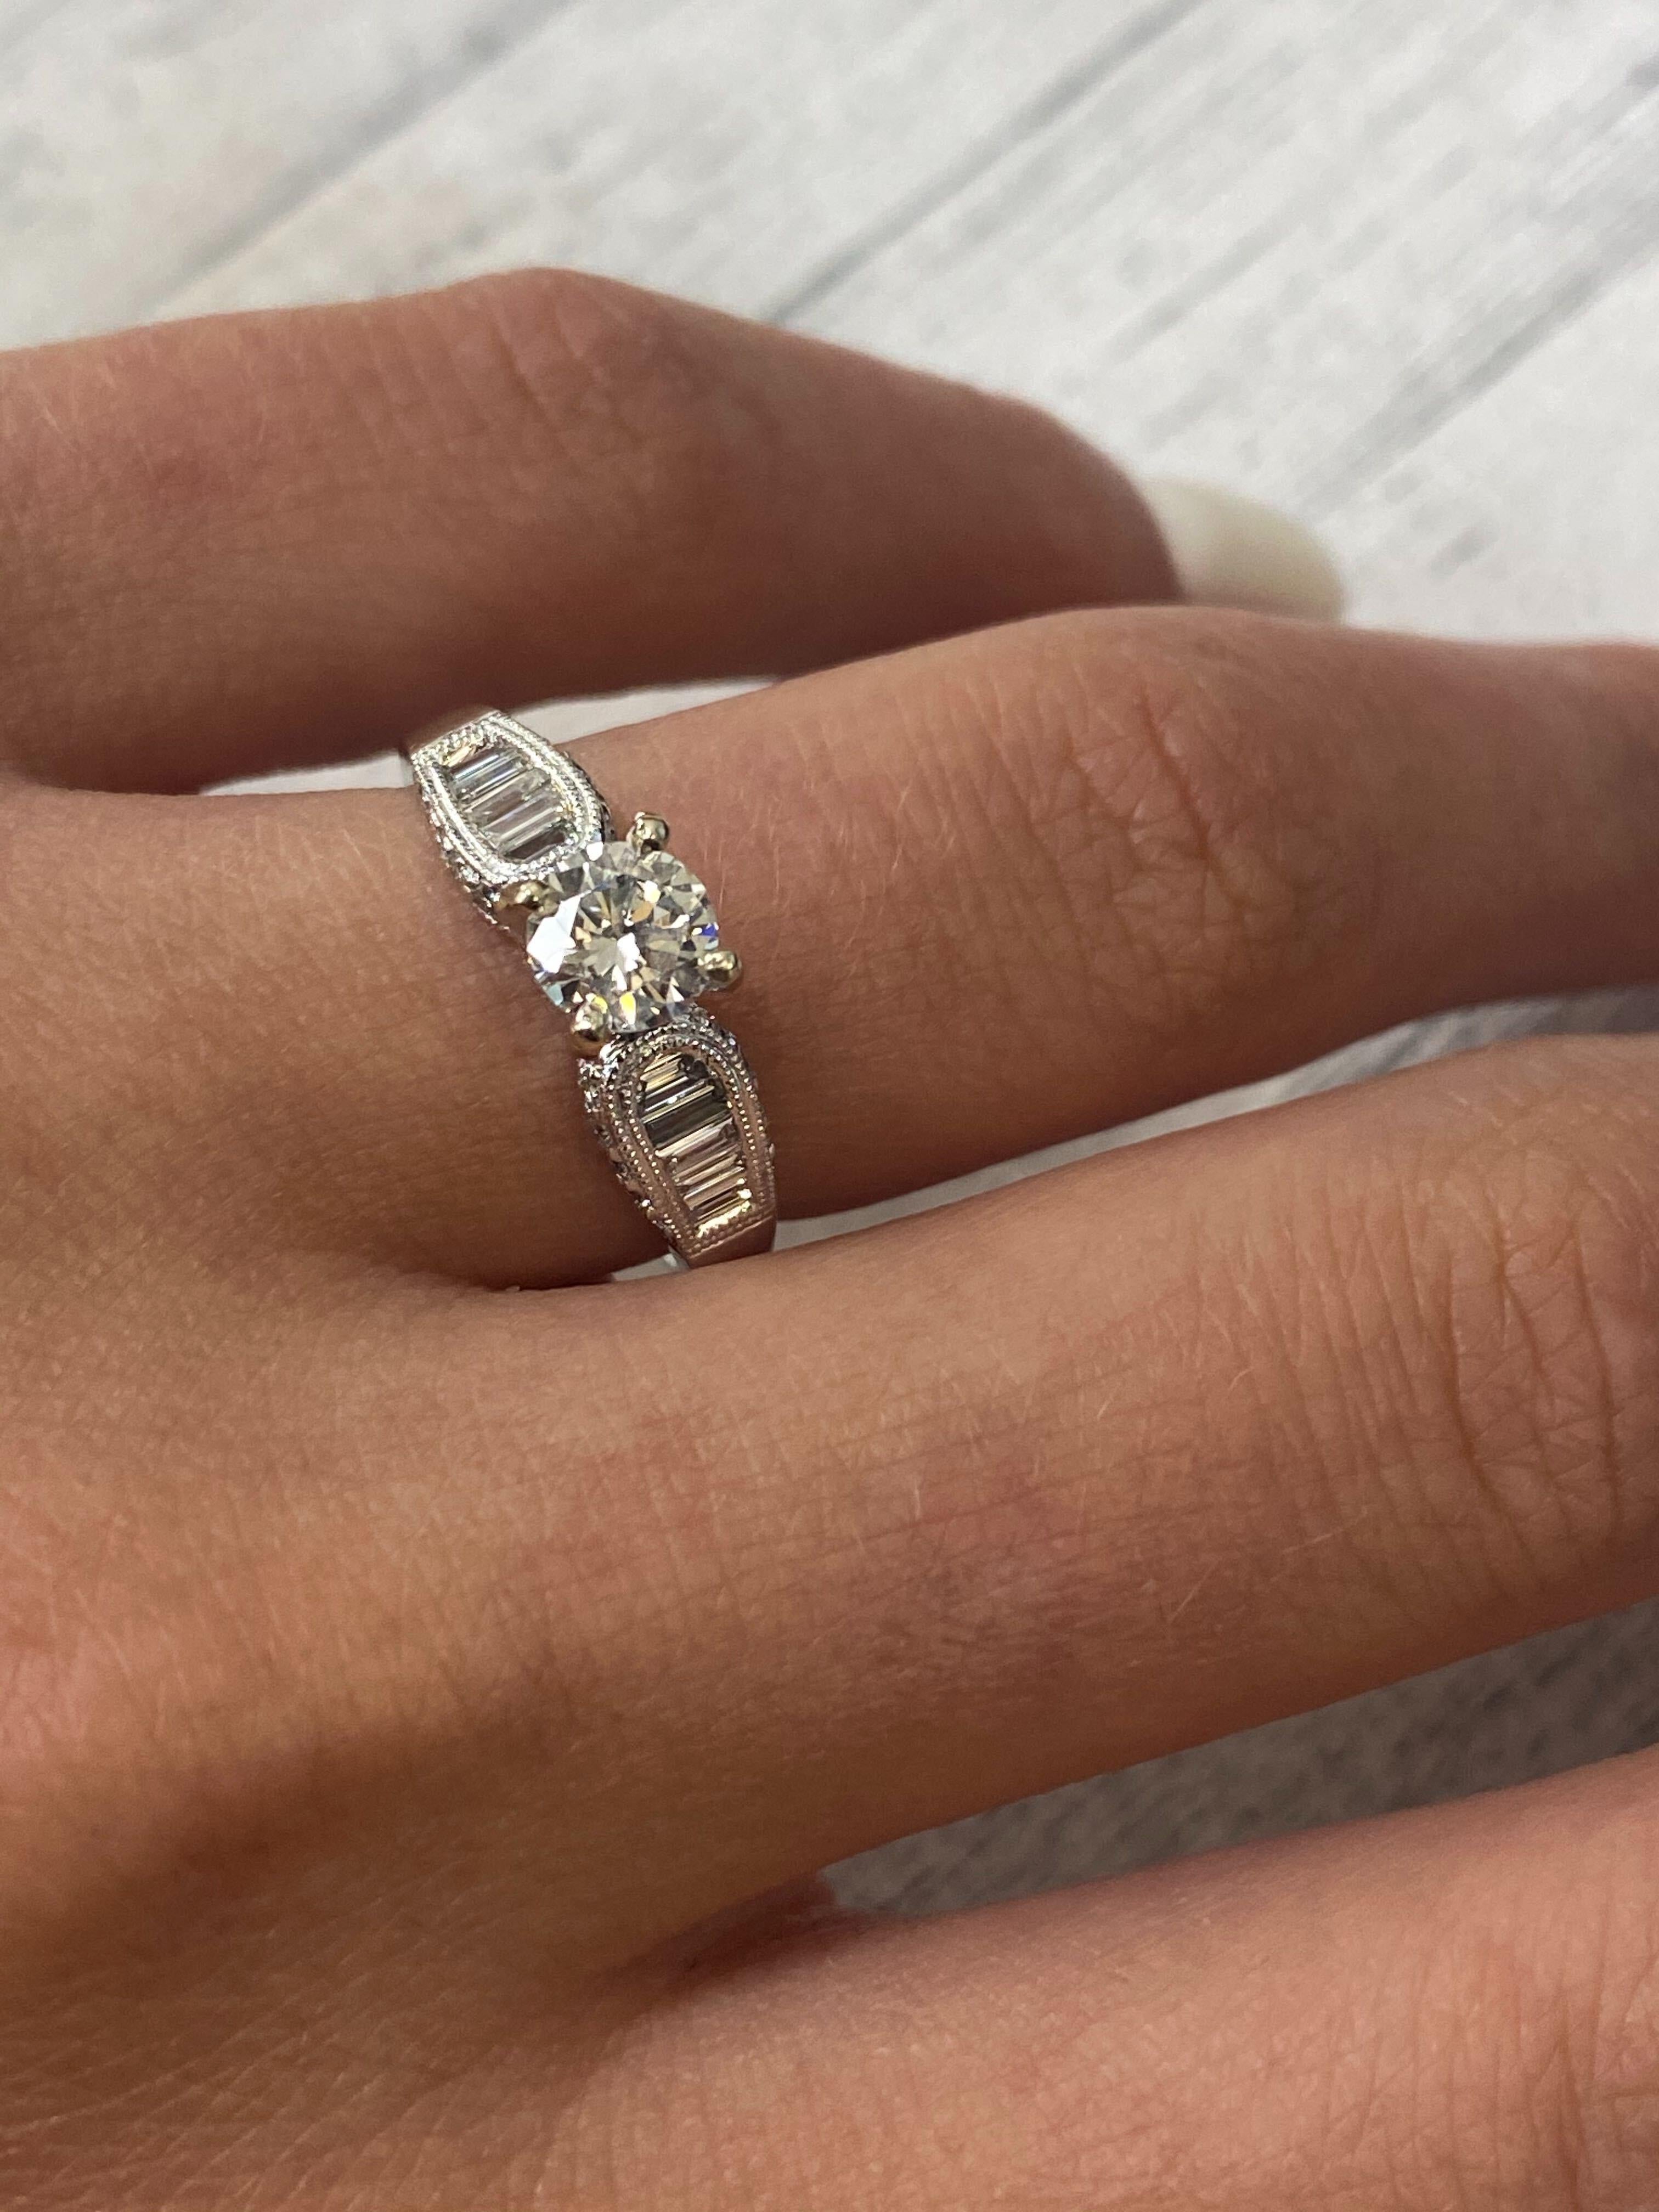 Rachel Koen Diamond Engagement Ring 18K White Gold 1.03Cttw For Sale 2